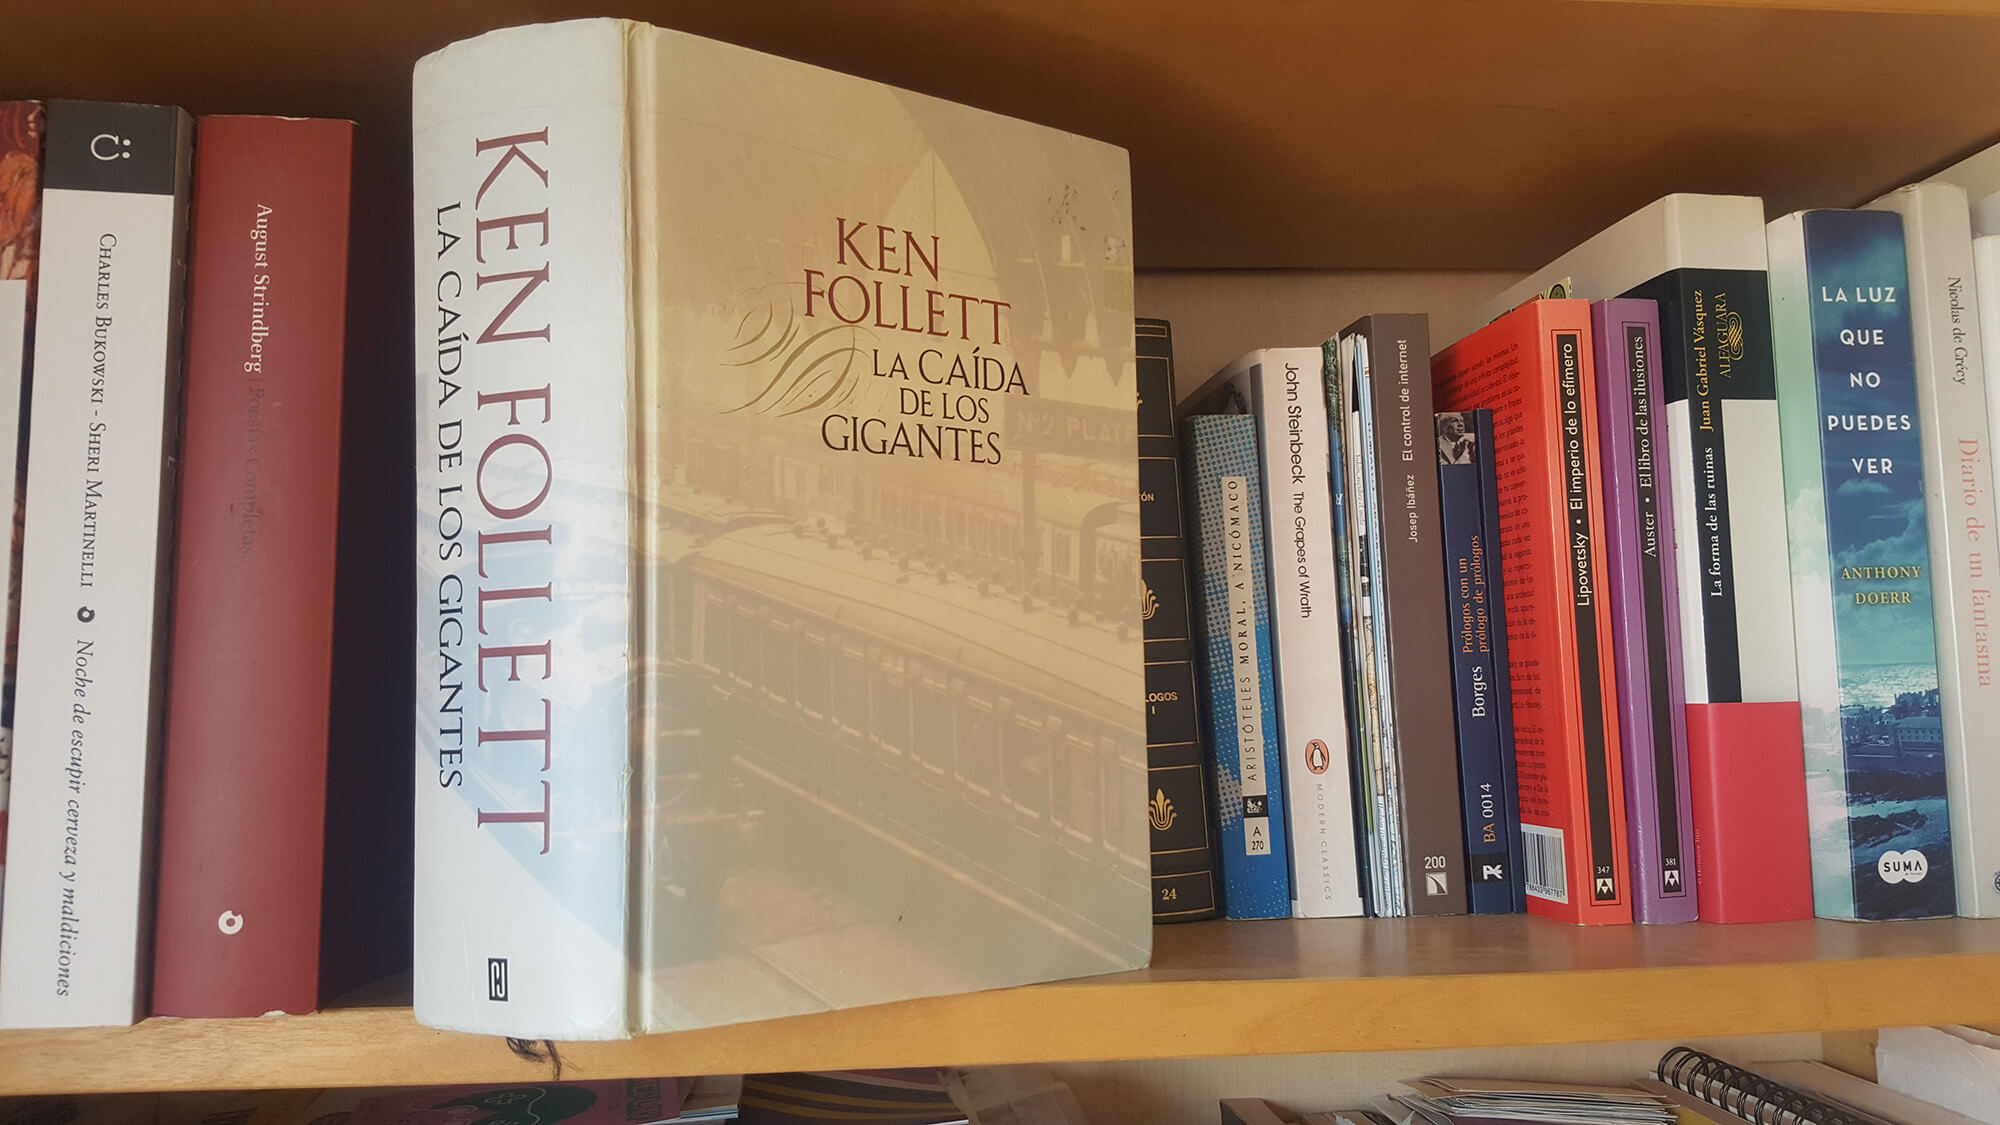 La caída de los gigantes de Ken Follett, reseña y comentarios - Lectura  Abierta